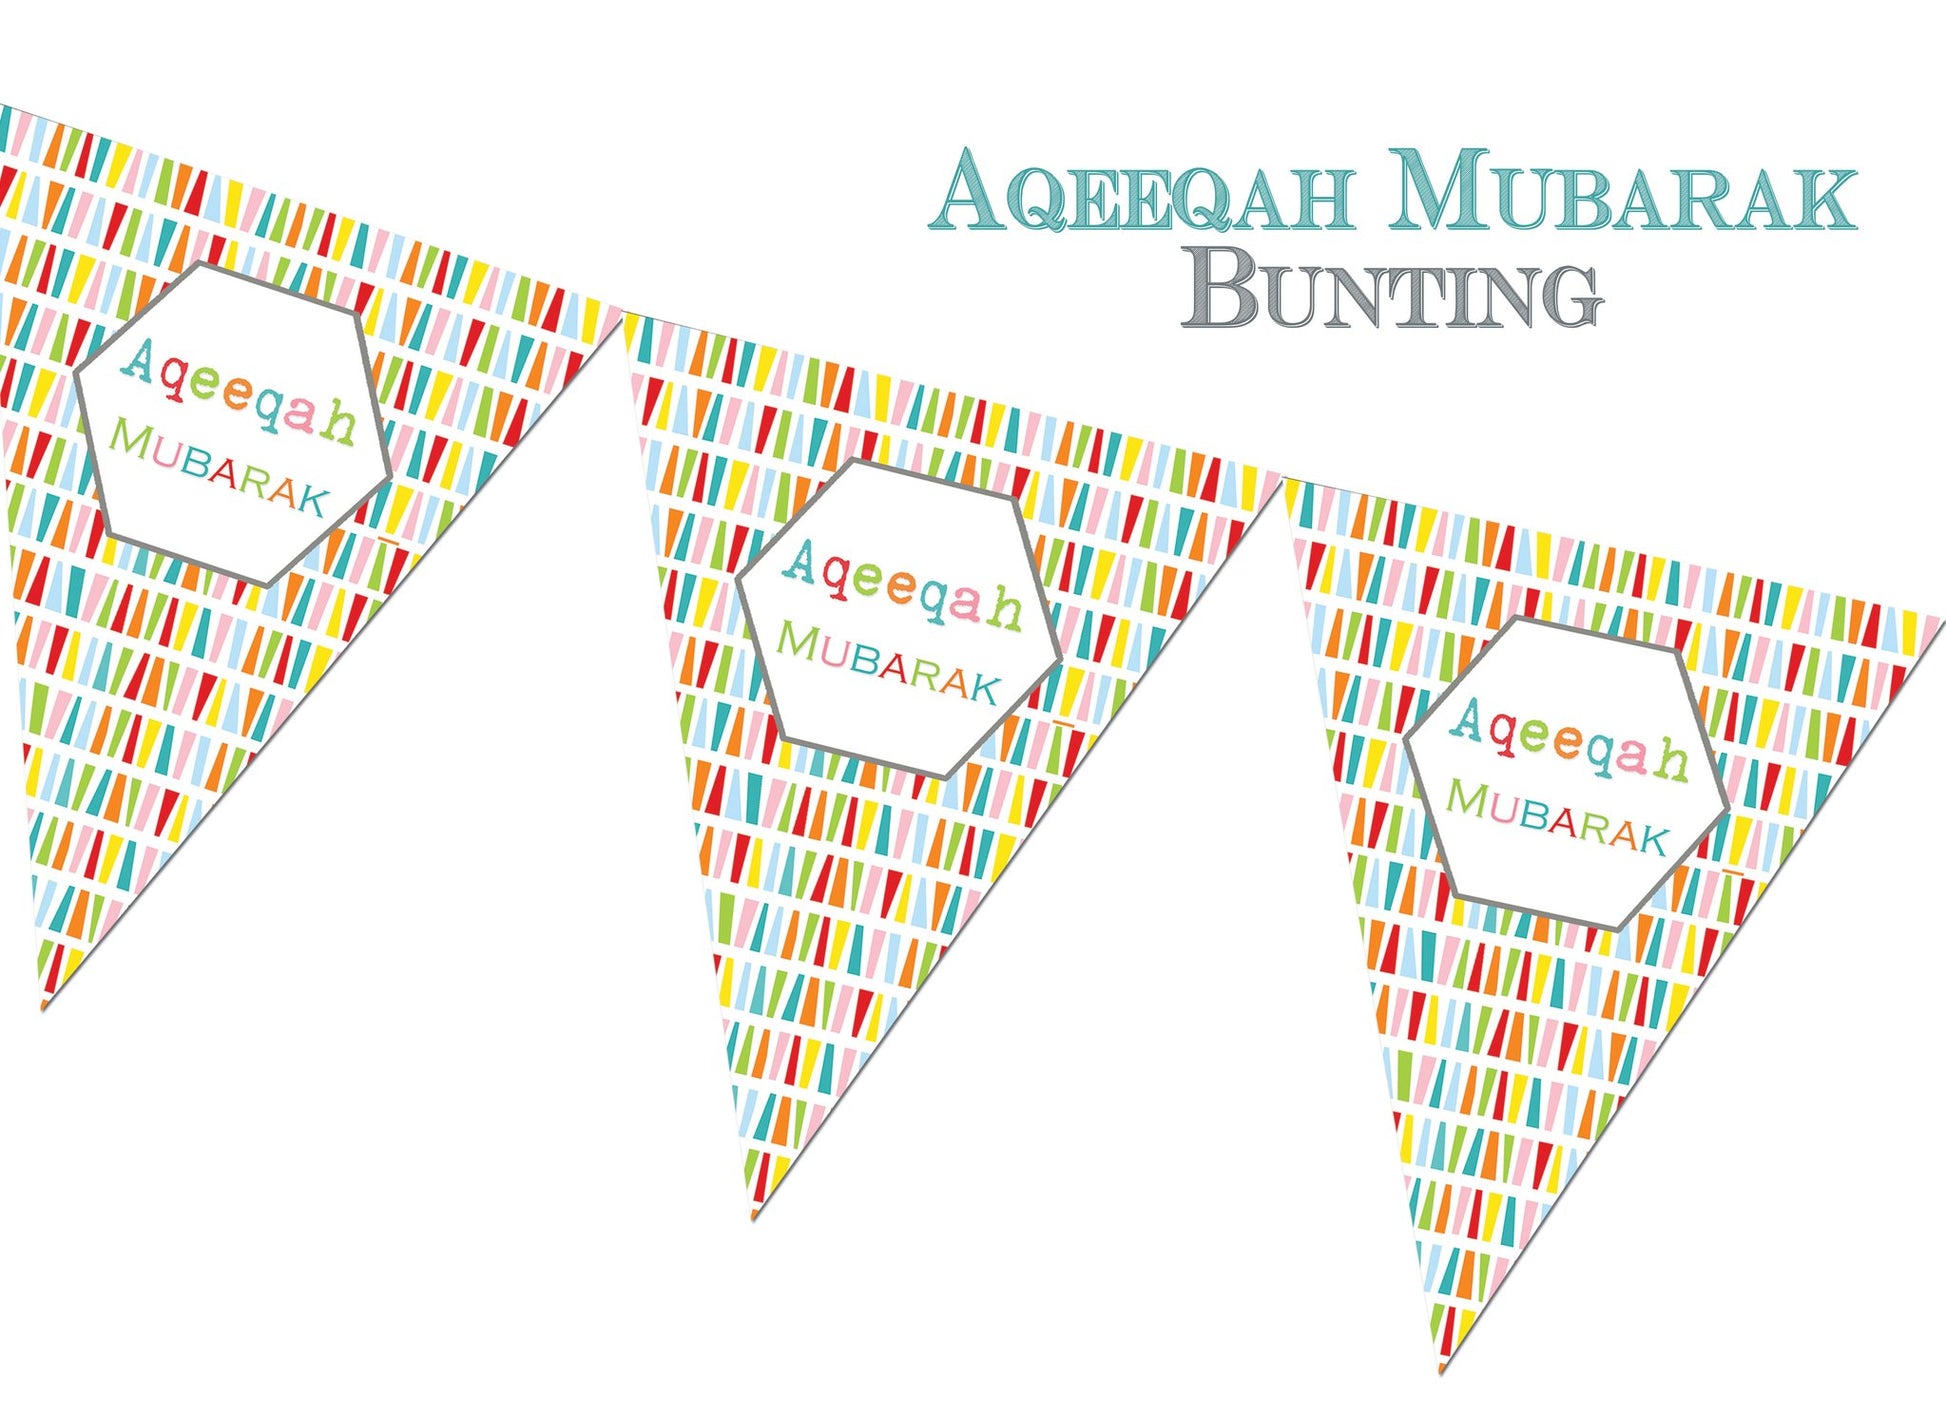 Aqeeqah Mubarak Bunting - Anafiya Gifts